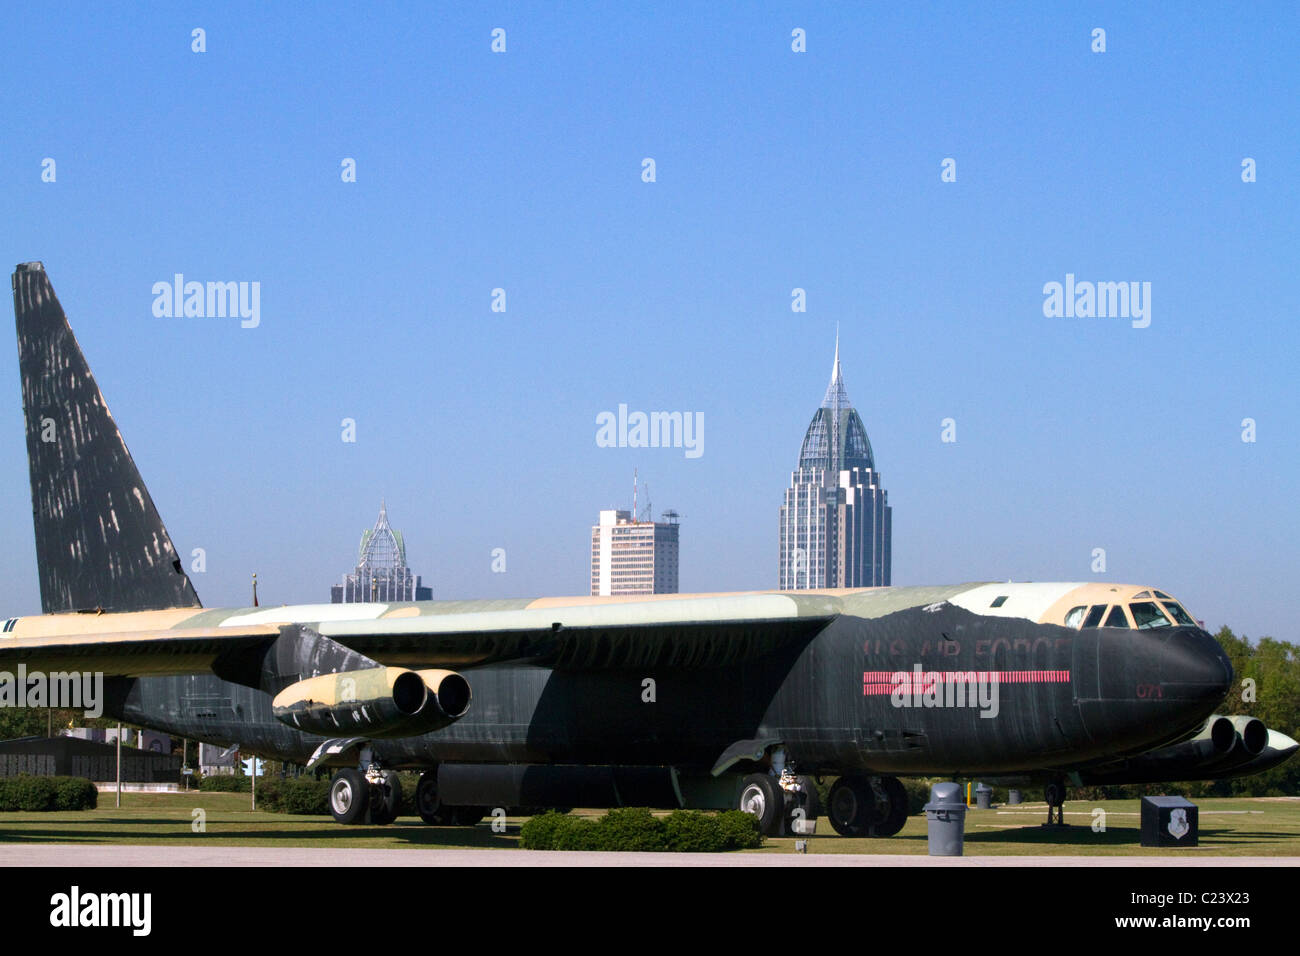 'Calamity Jane' B-52D bomber located at Battleship Memorial Park, Mobile, Alabama, USA. Stock Photo